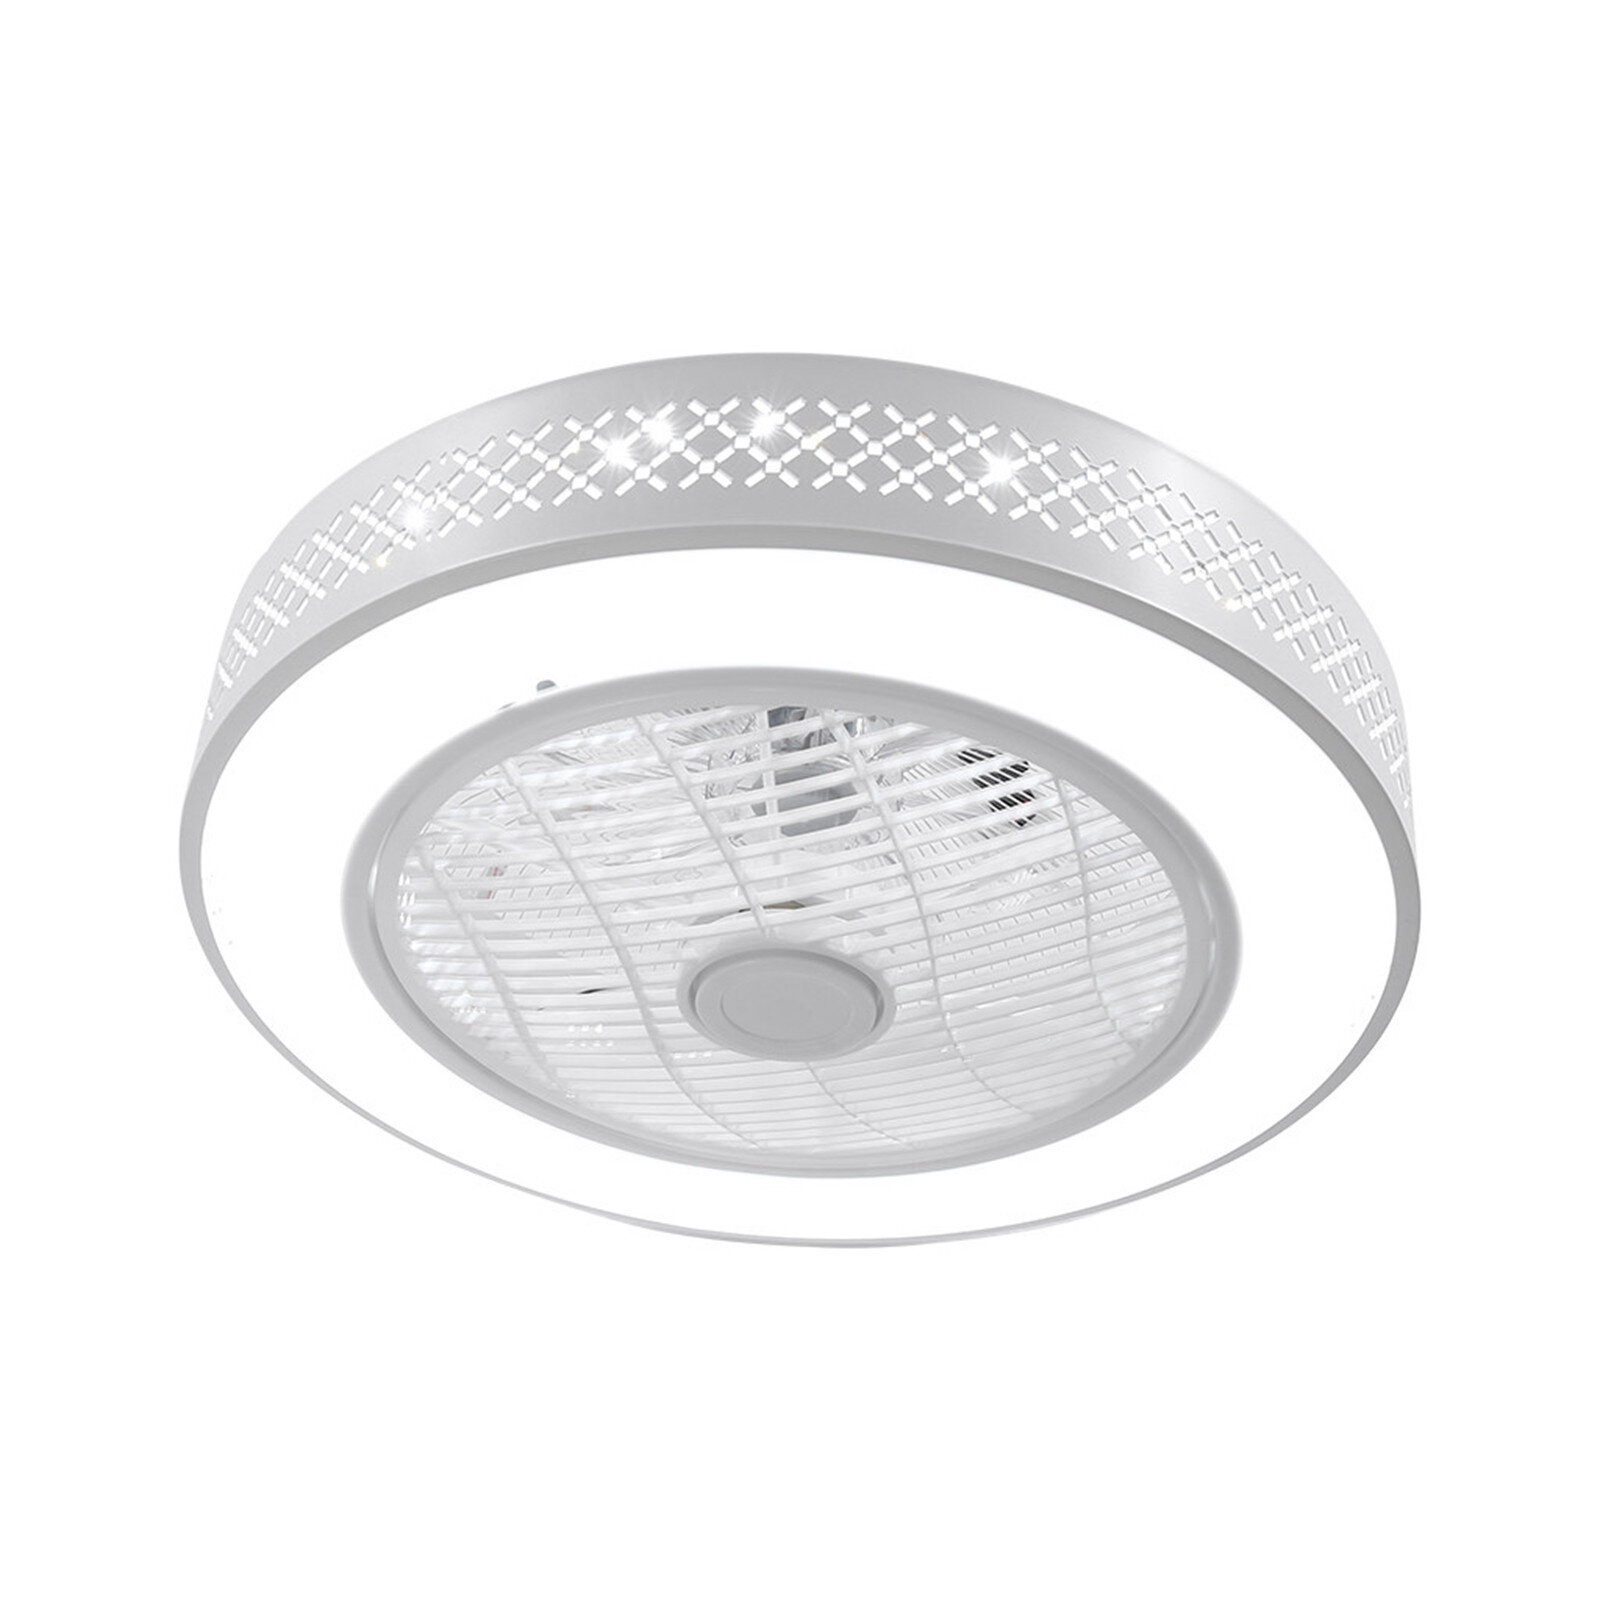 Details about   LED Ceiling Fan Lighting Light Modern Adjustable Wind Speed Home Light Bed Room